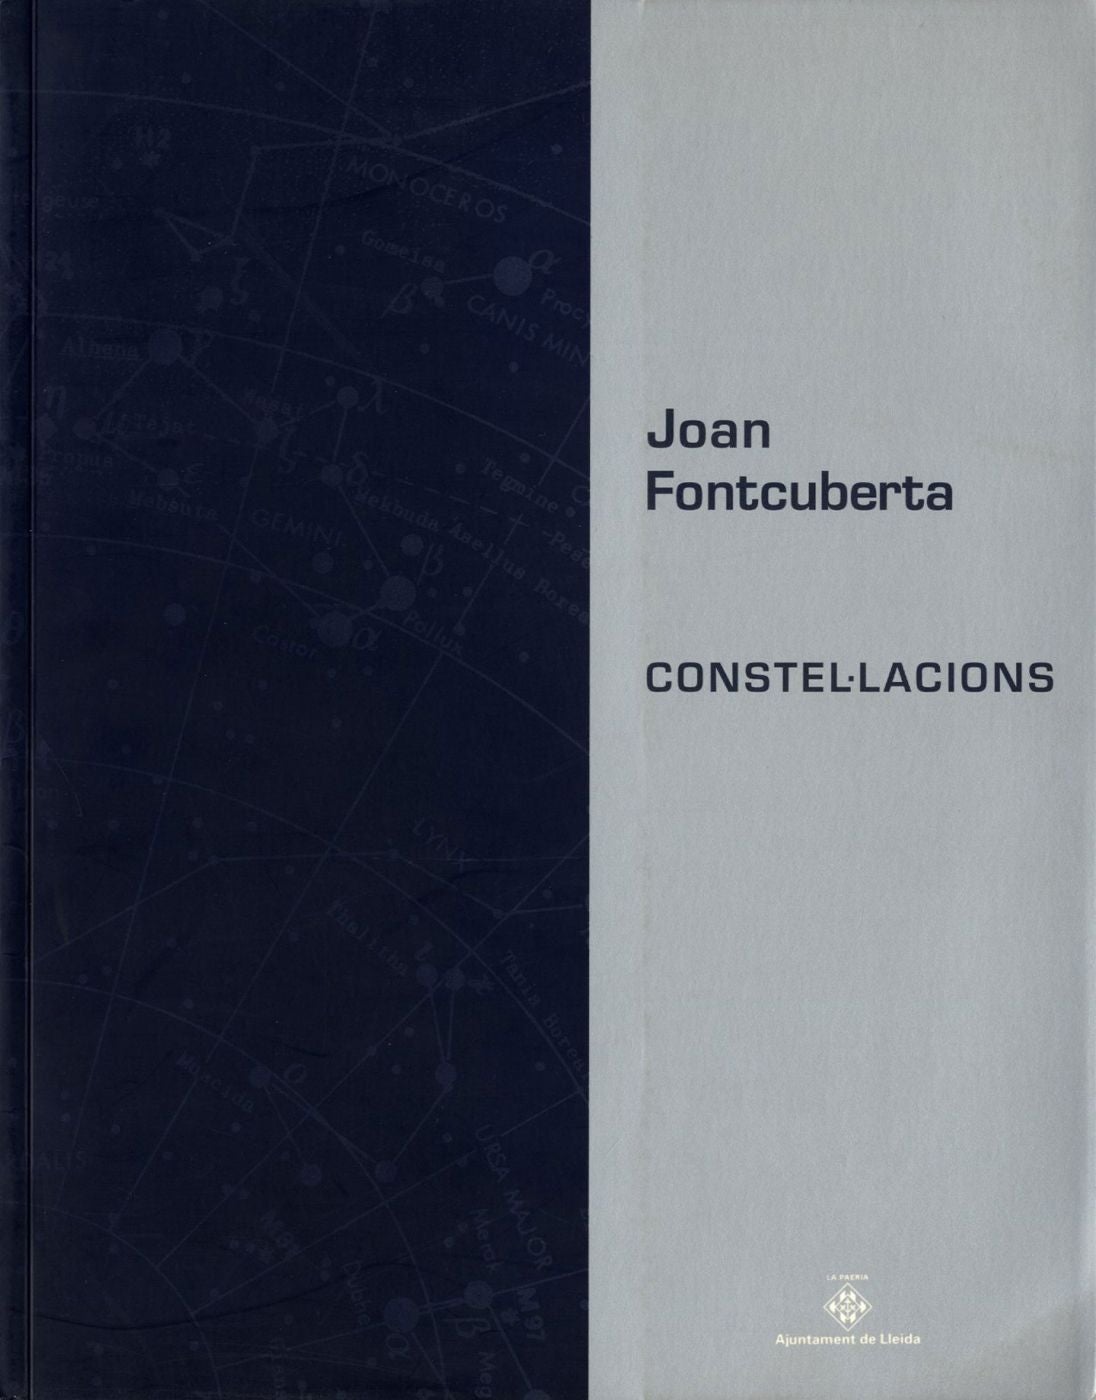 Joan Fontcuberta: Constellacions (Constellations)